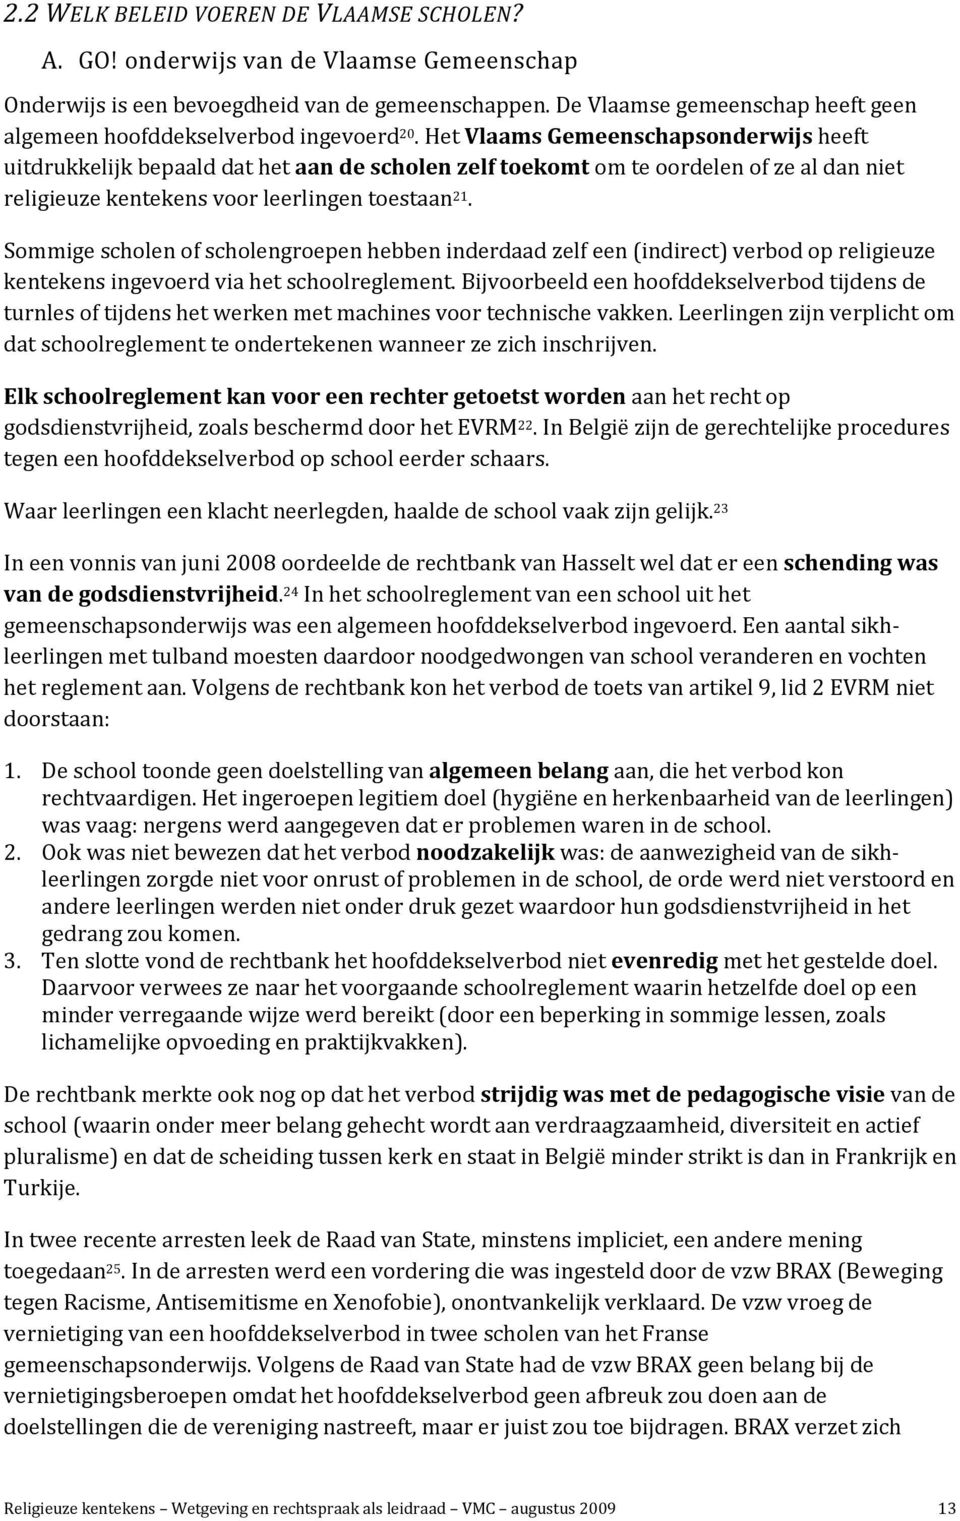 Het Vlaams Gemeenschapsonderwijs heeft uitdrukkelijk bepaald dat het aan de scholen zelf toekomt om te oordelen of ze al dan niet religieuze kentekens voor leerlingen toestaan 21.